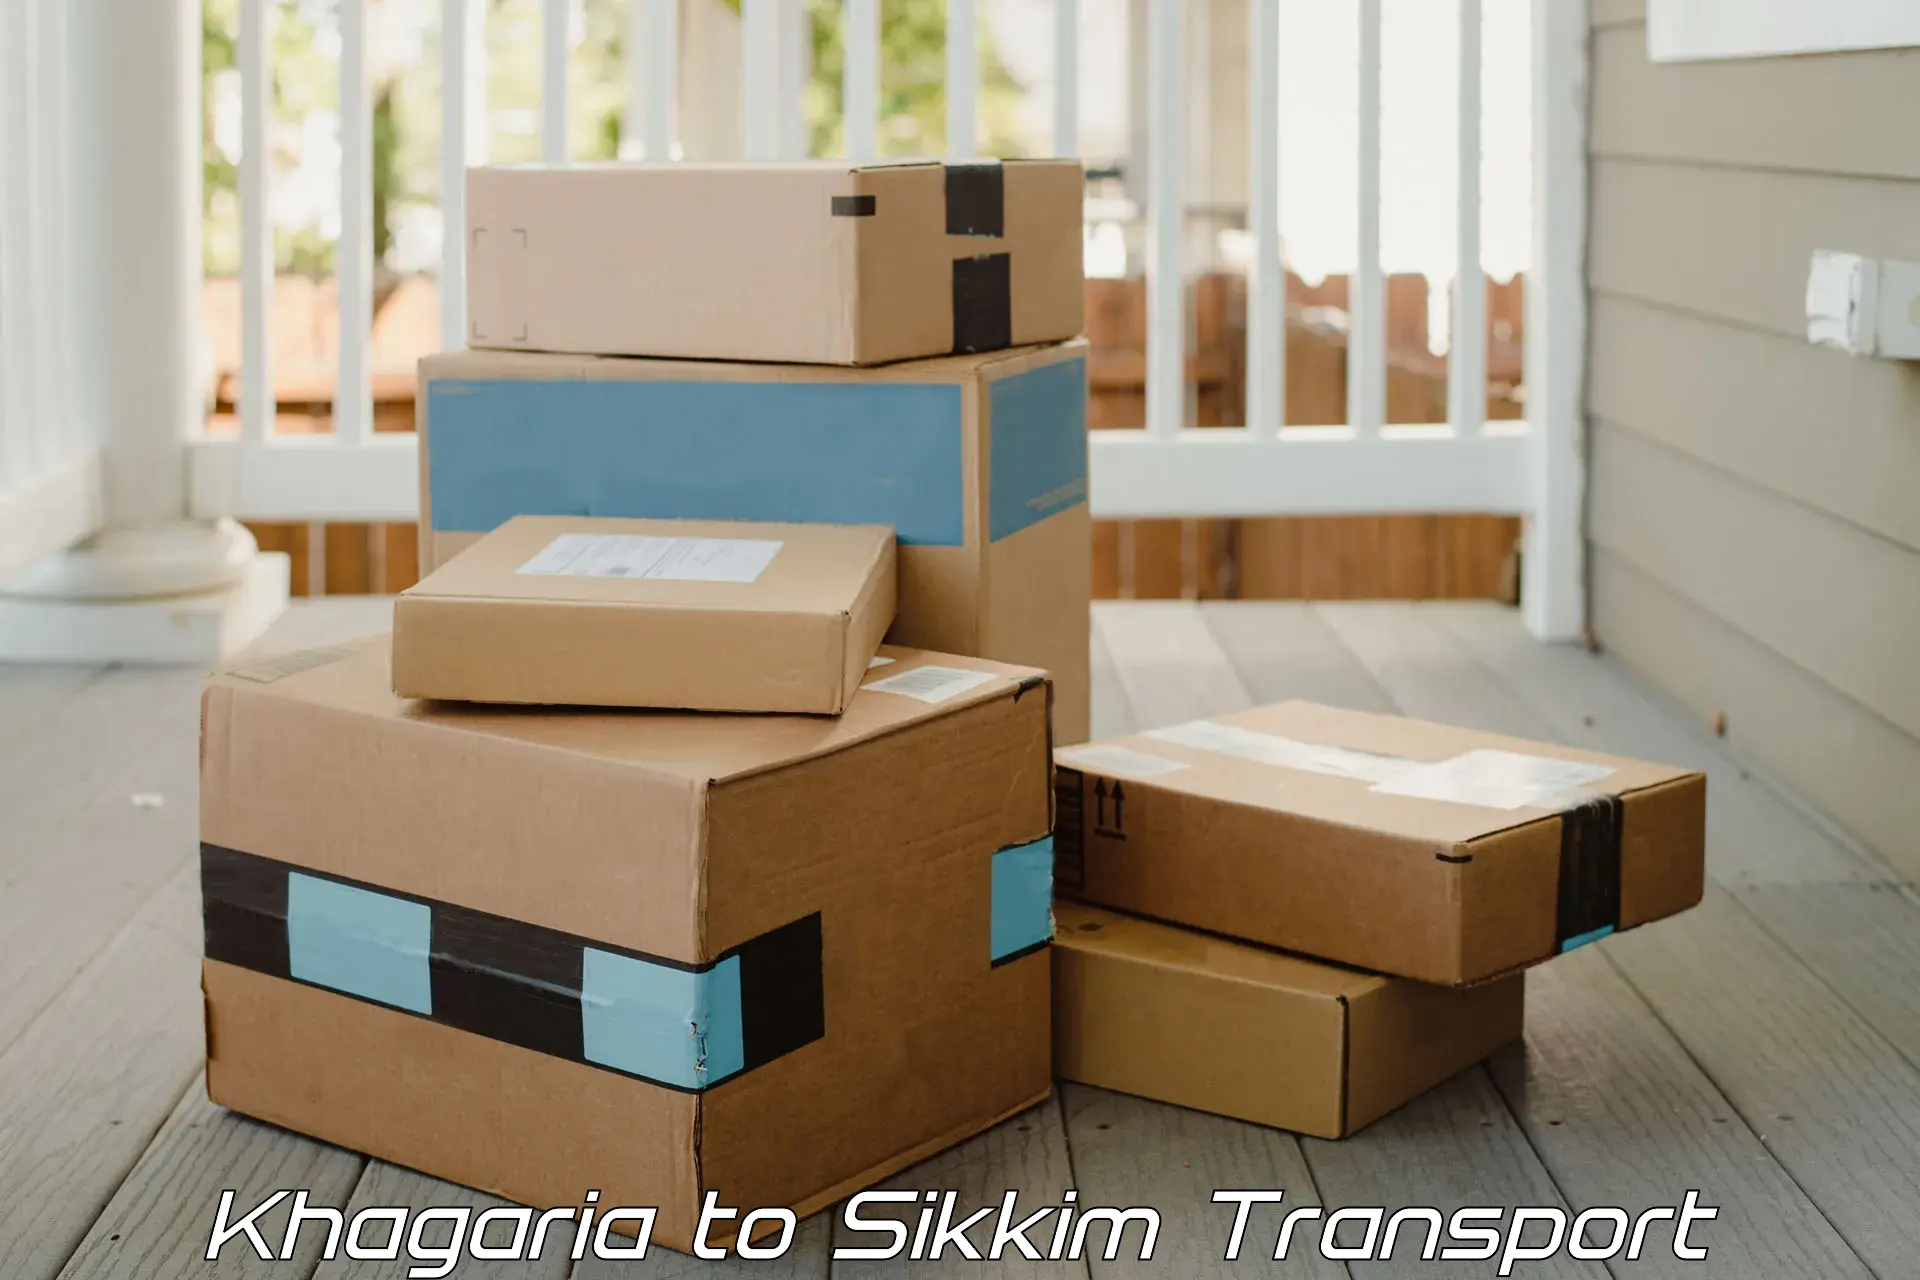 Shipping partner Khagaria to Mangan